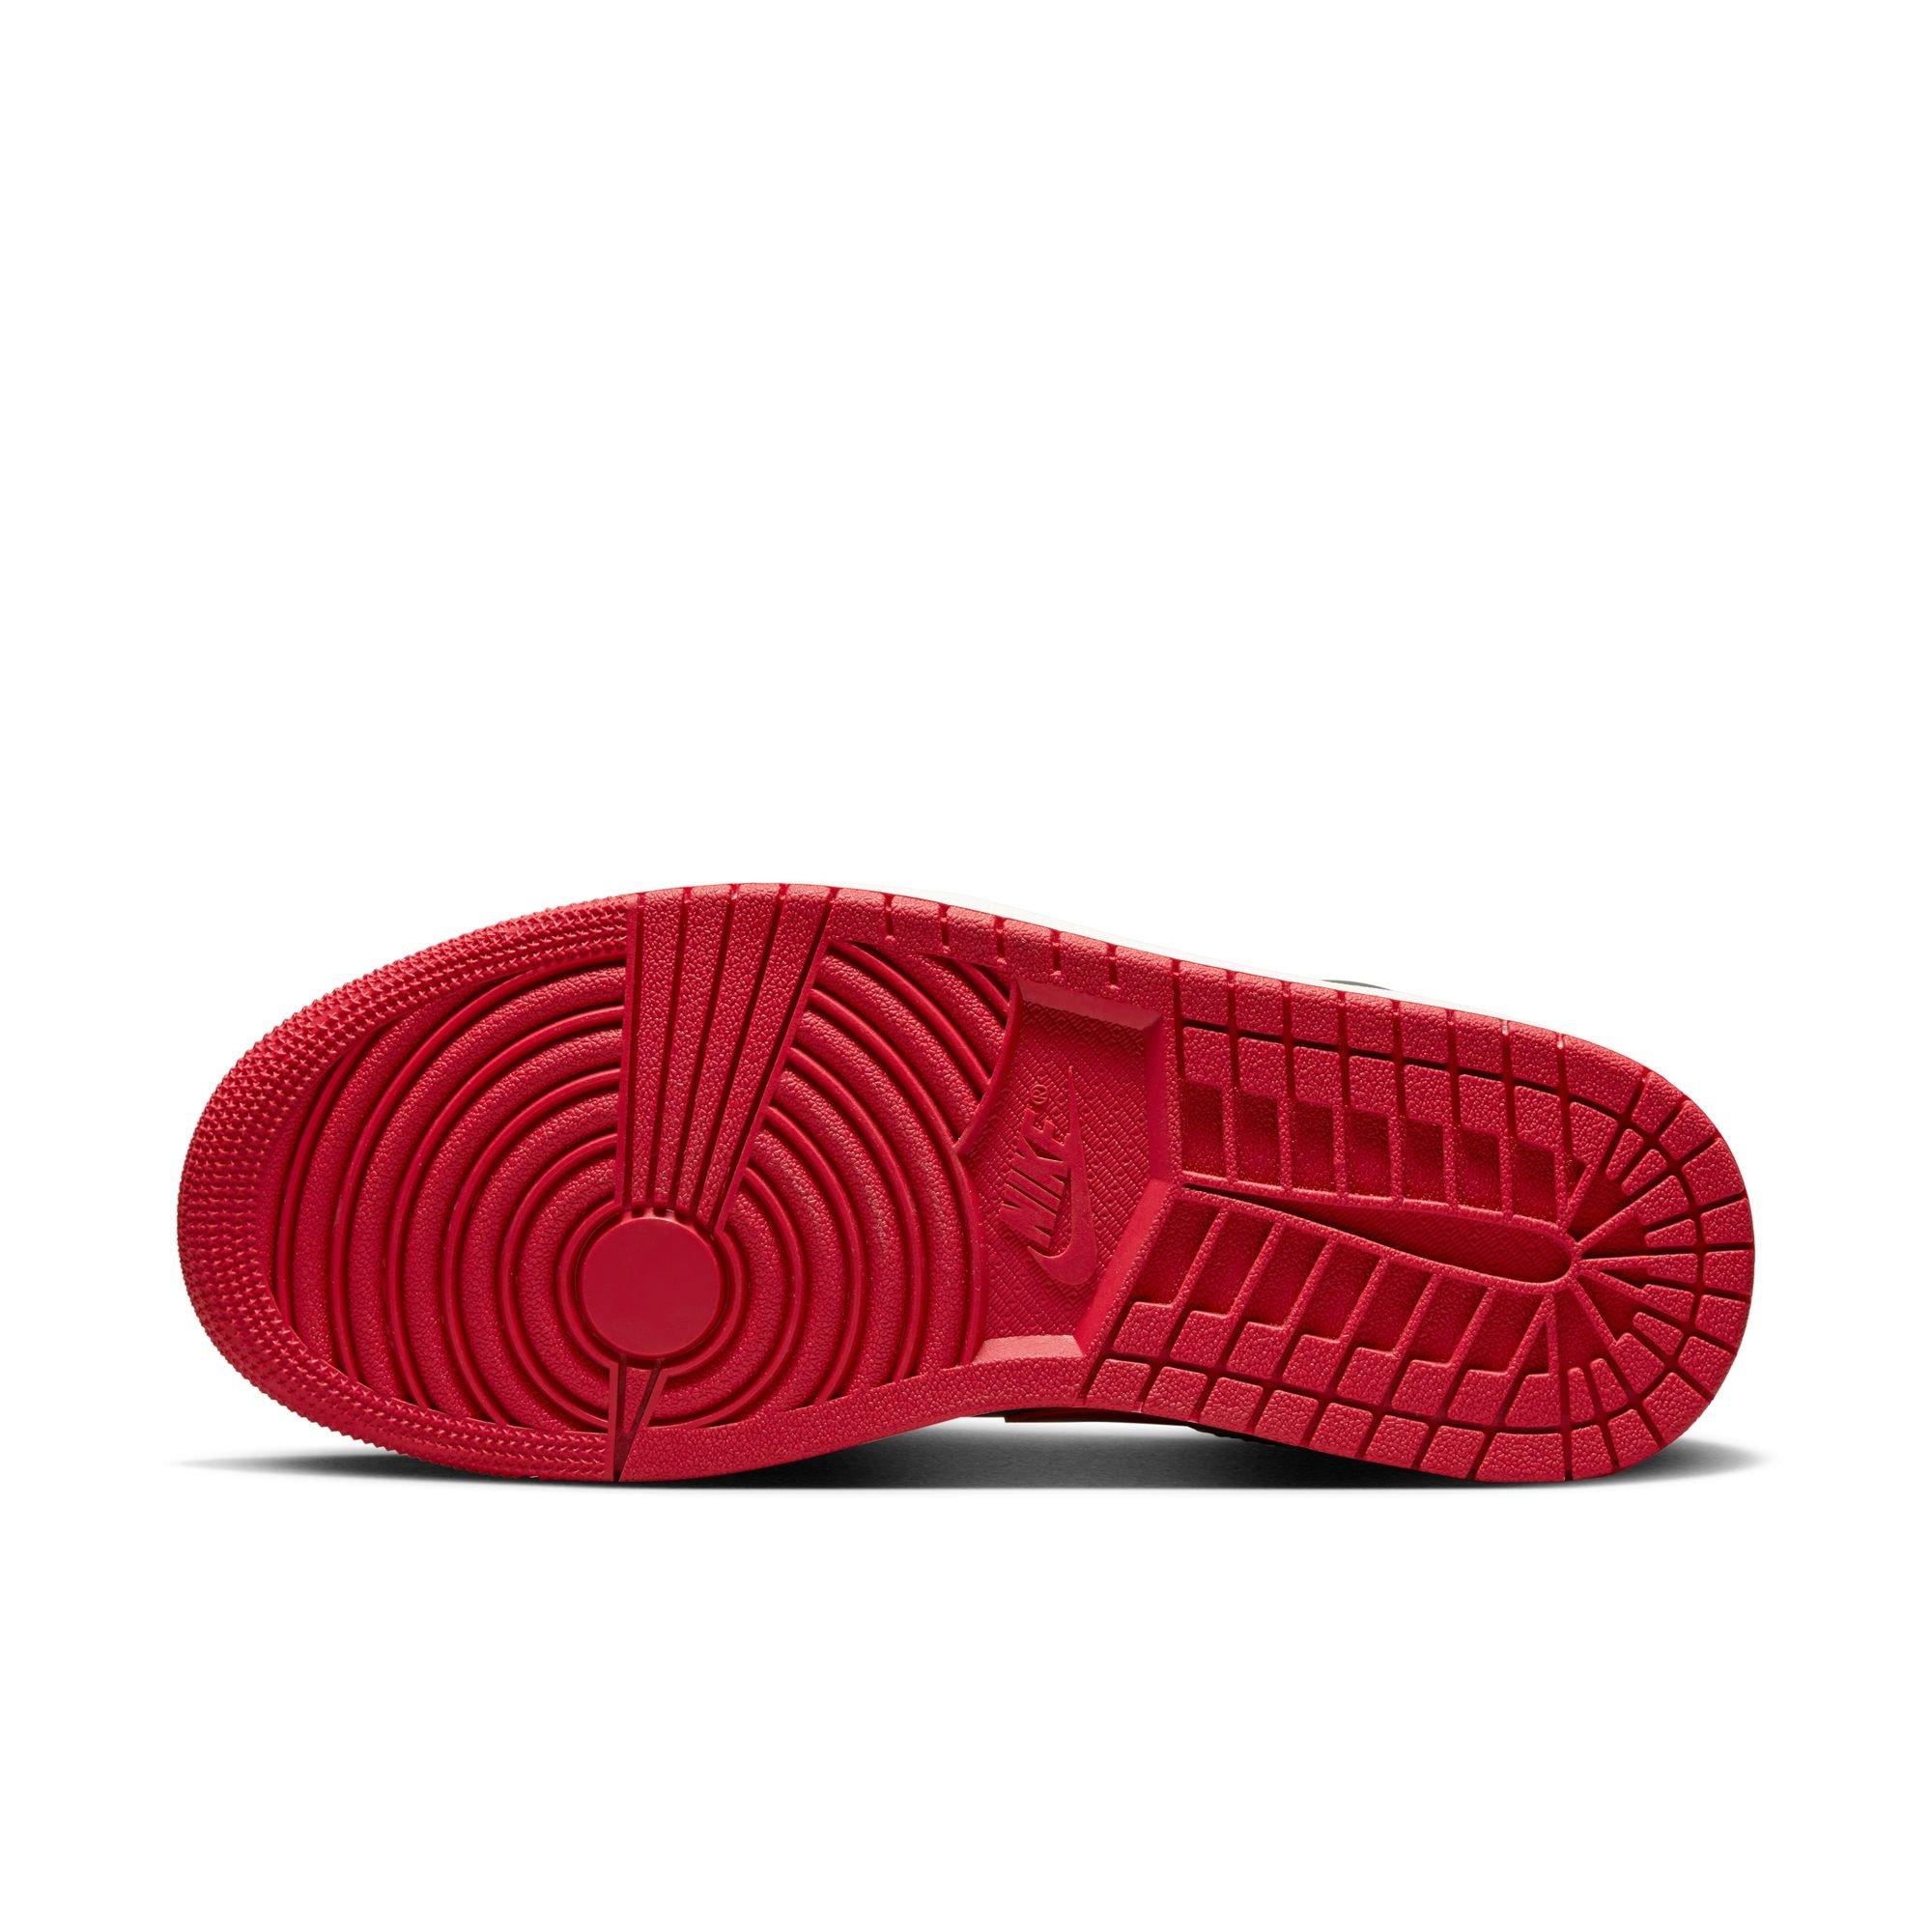 Jordan Air Jordan 1 LV8D SE Black / Gym Red / Sail Low Top Sneakers - Sneak  in Peace